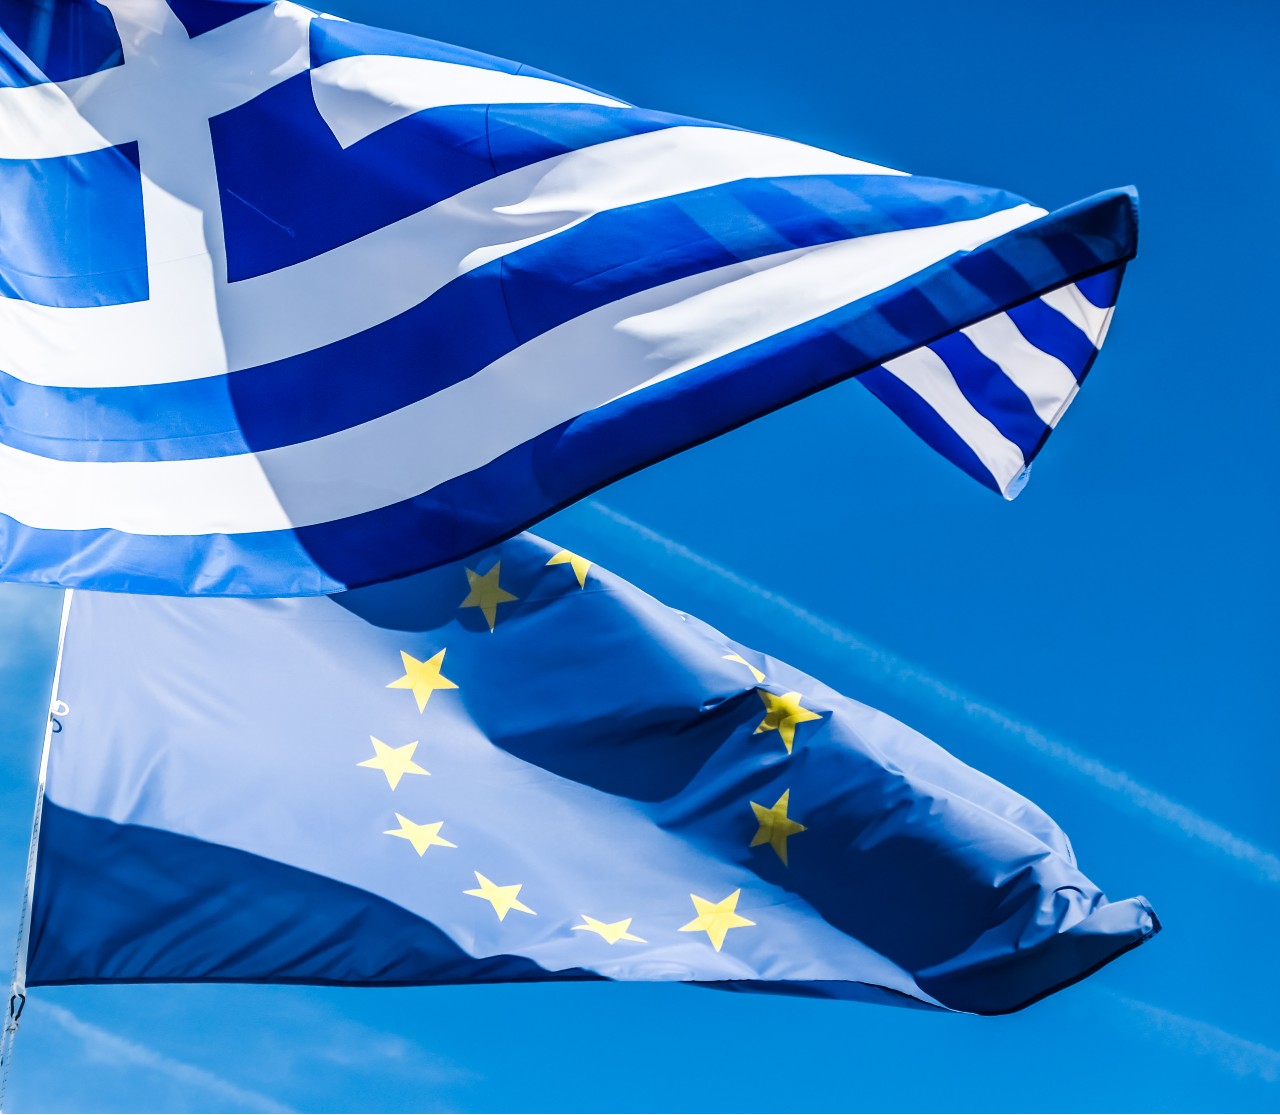 Κομισιόν: Ανάπτυξη 2,4% για την Ελλάδα το 2023 - Πρωτογενές πλεόνασμα 2,5% το 2024